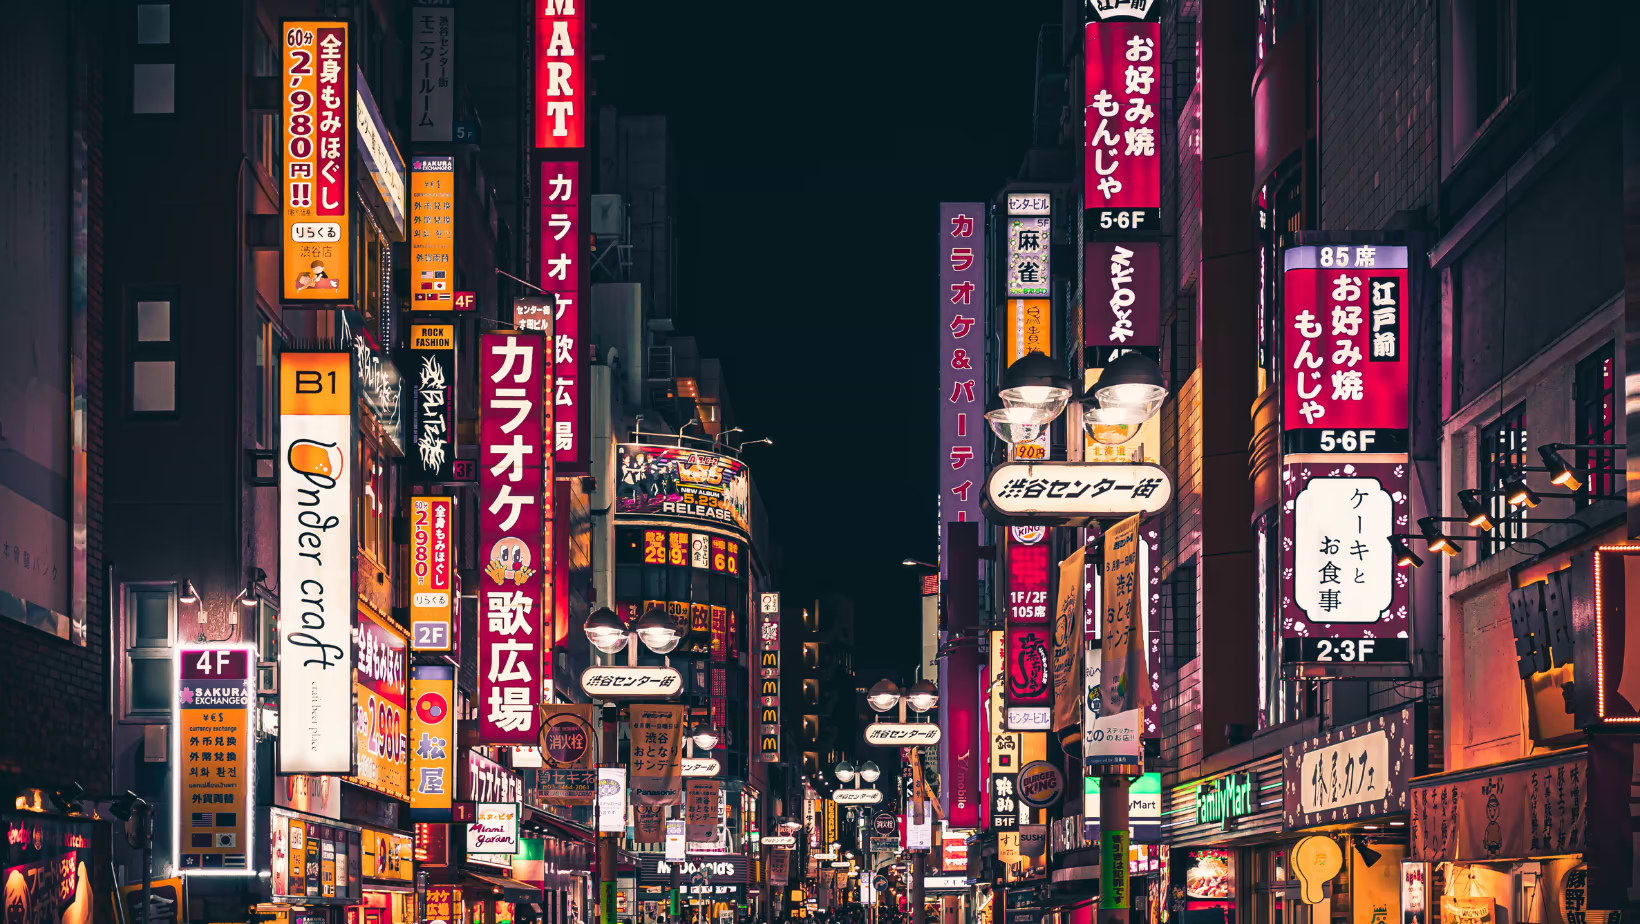 Nightlife of Japan